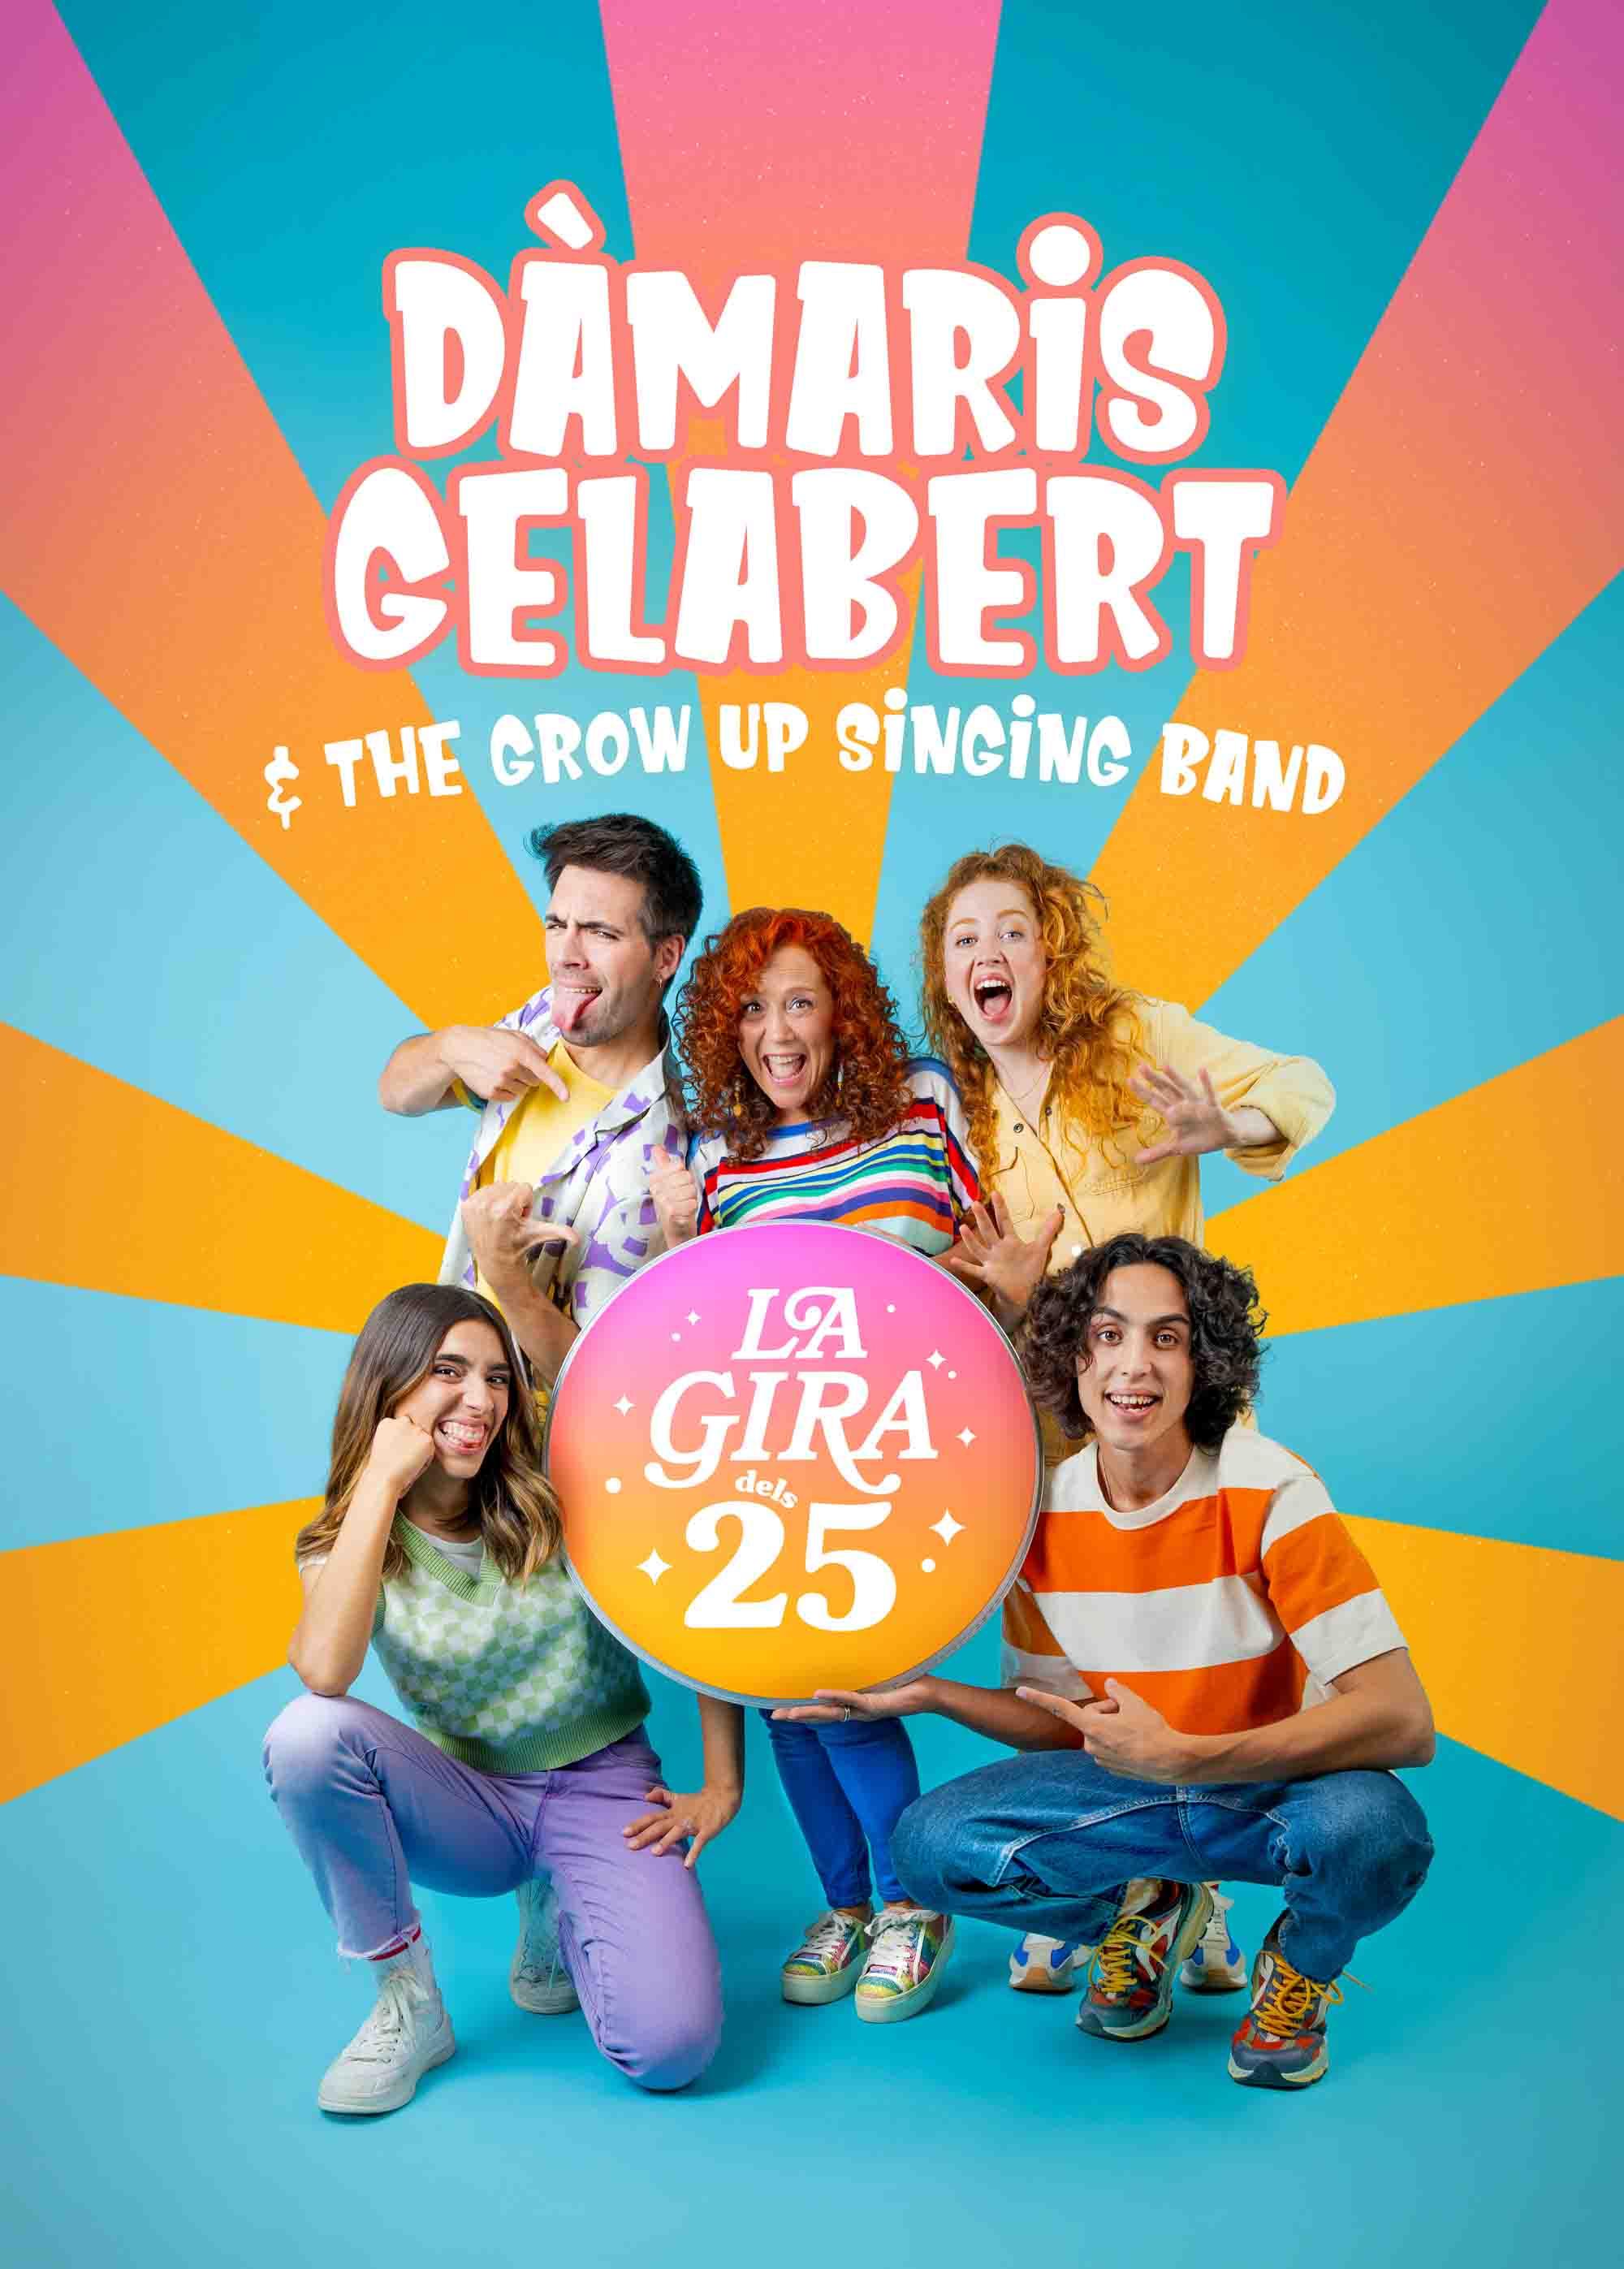 Dàmaris Gelabert & The Grow up singing Band